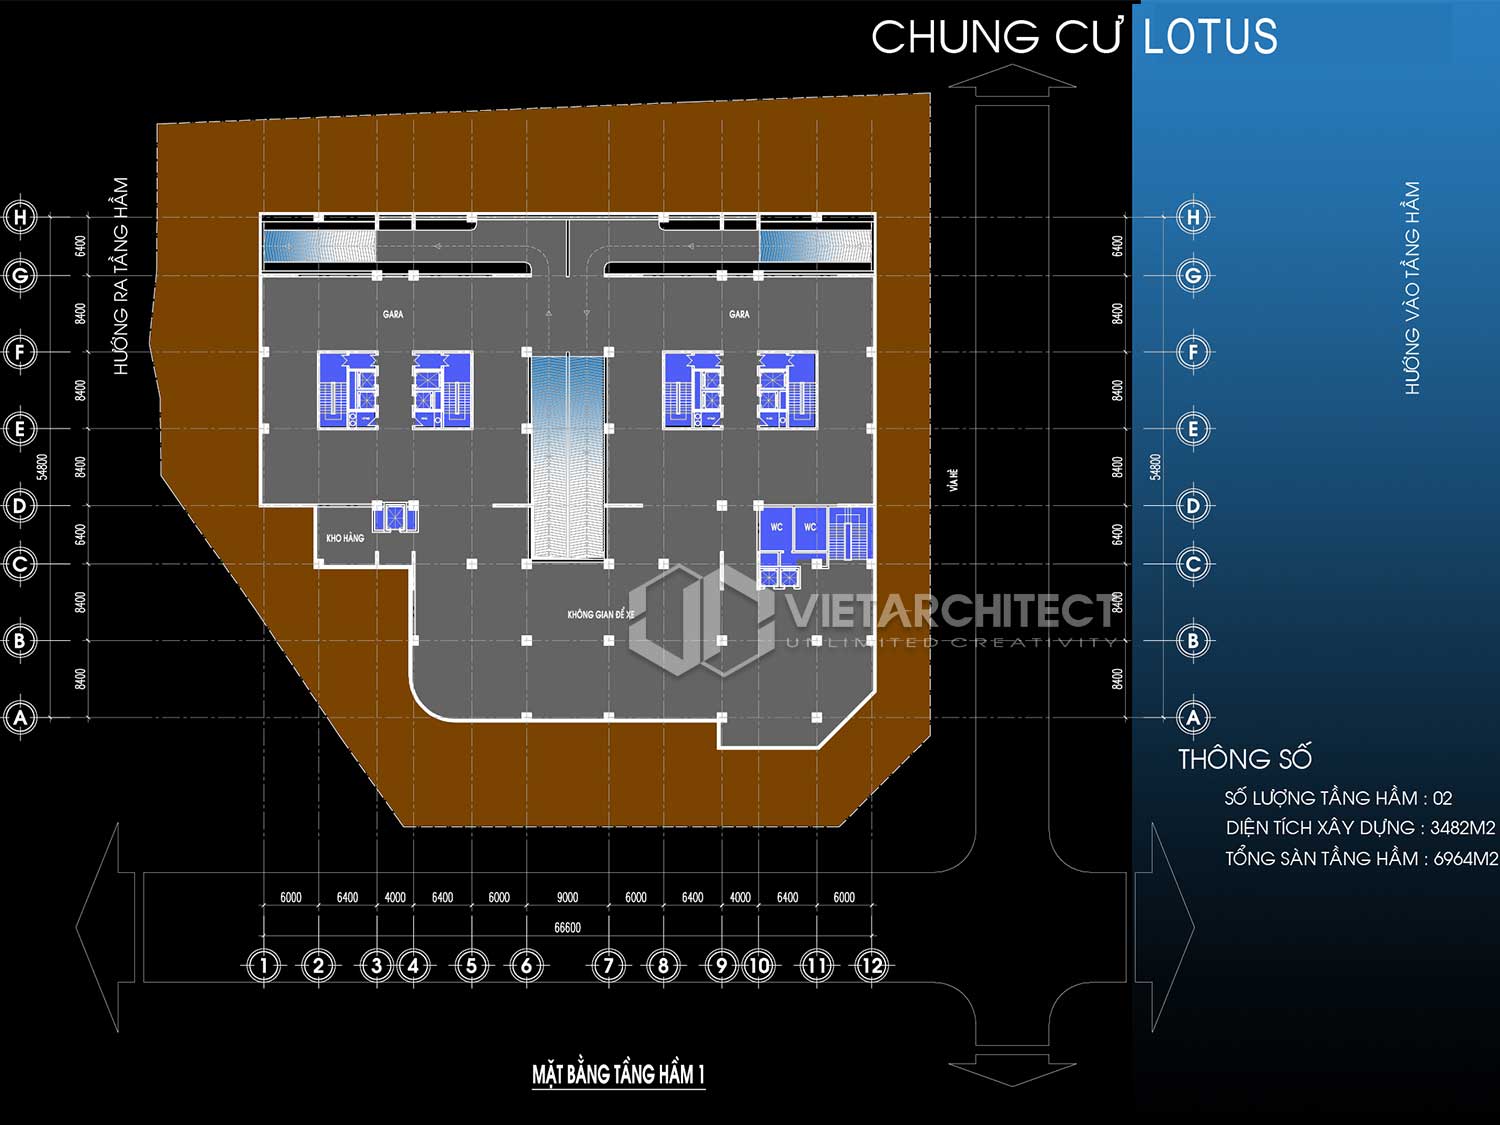 thiết kế chung cư lotus mặt bằng tầng hầm 